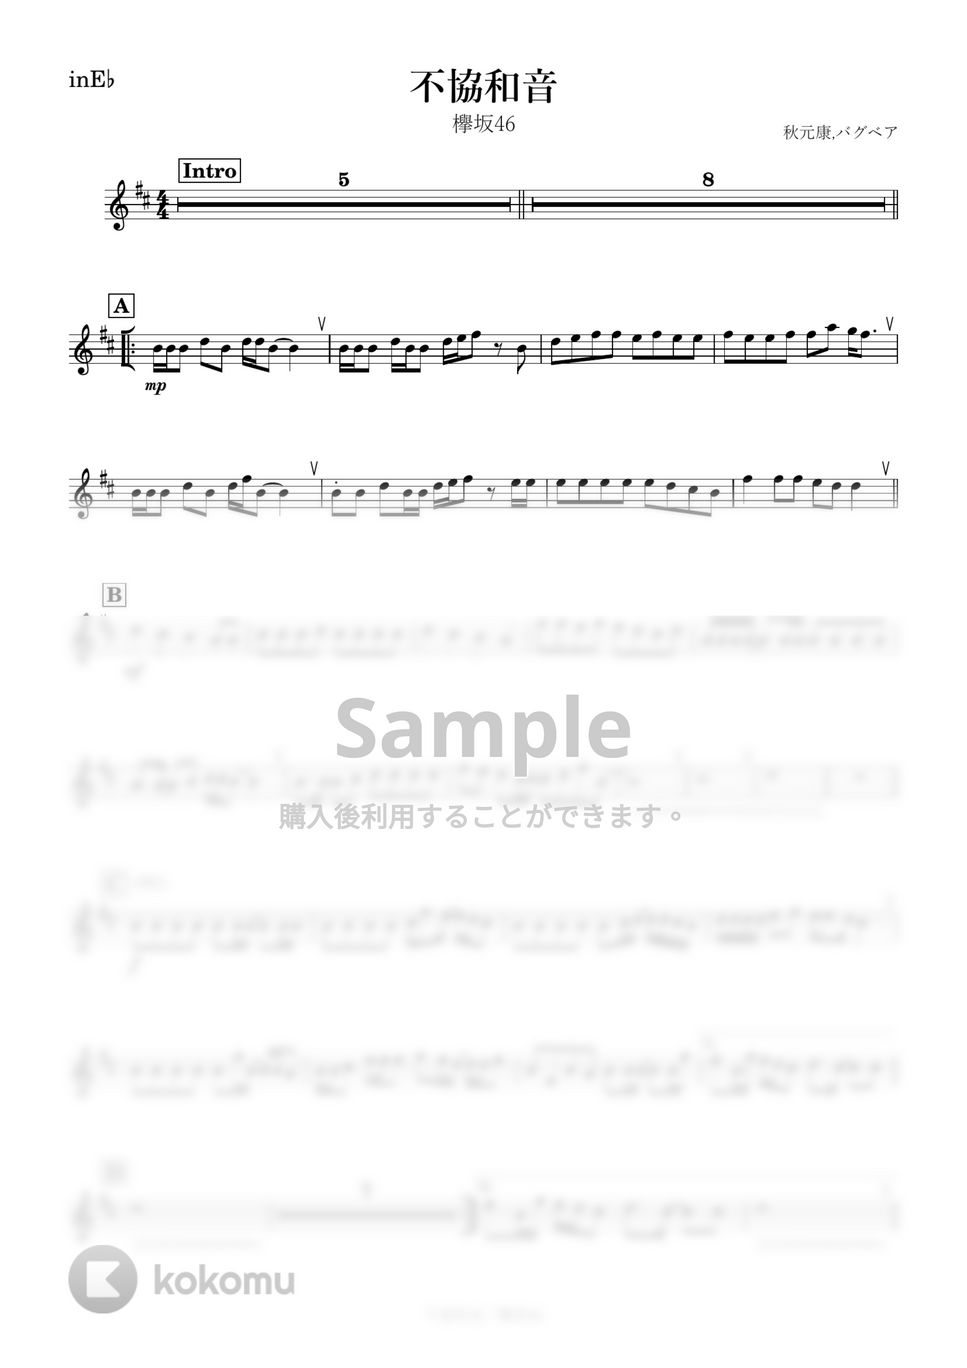 欅坂46 - 不協和音 (E♭) by kanamusic